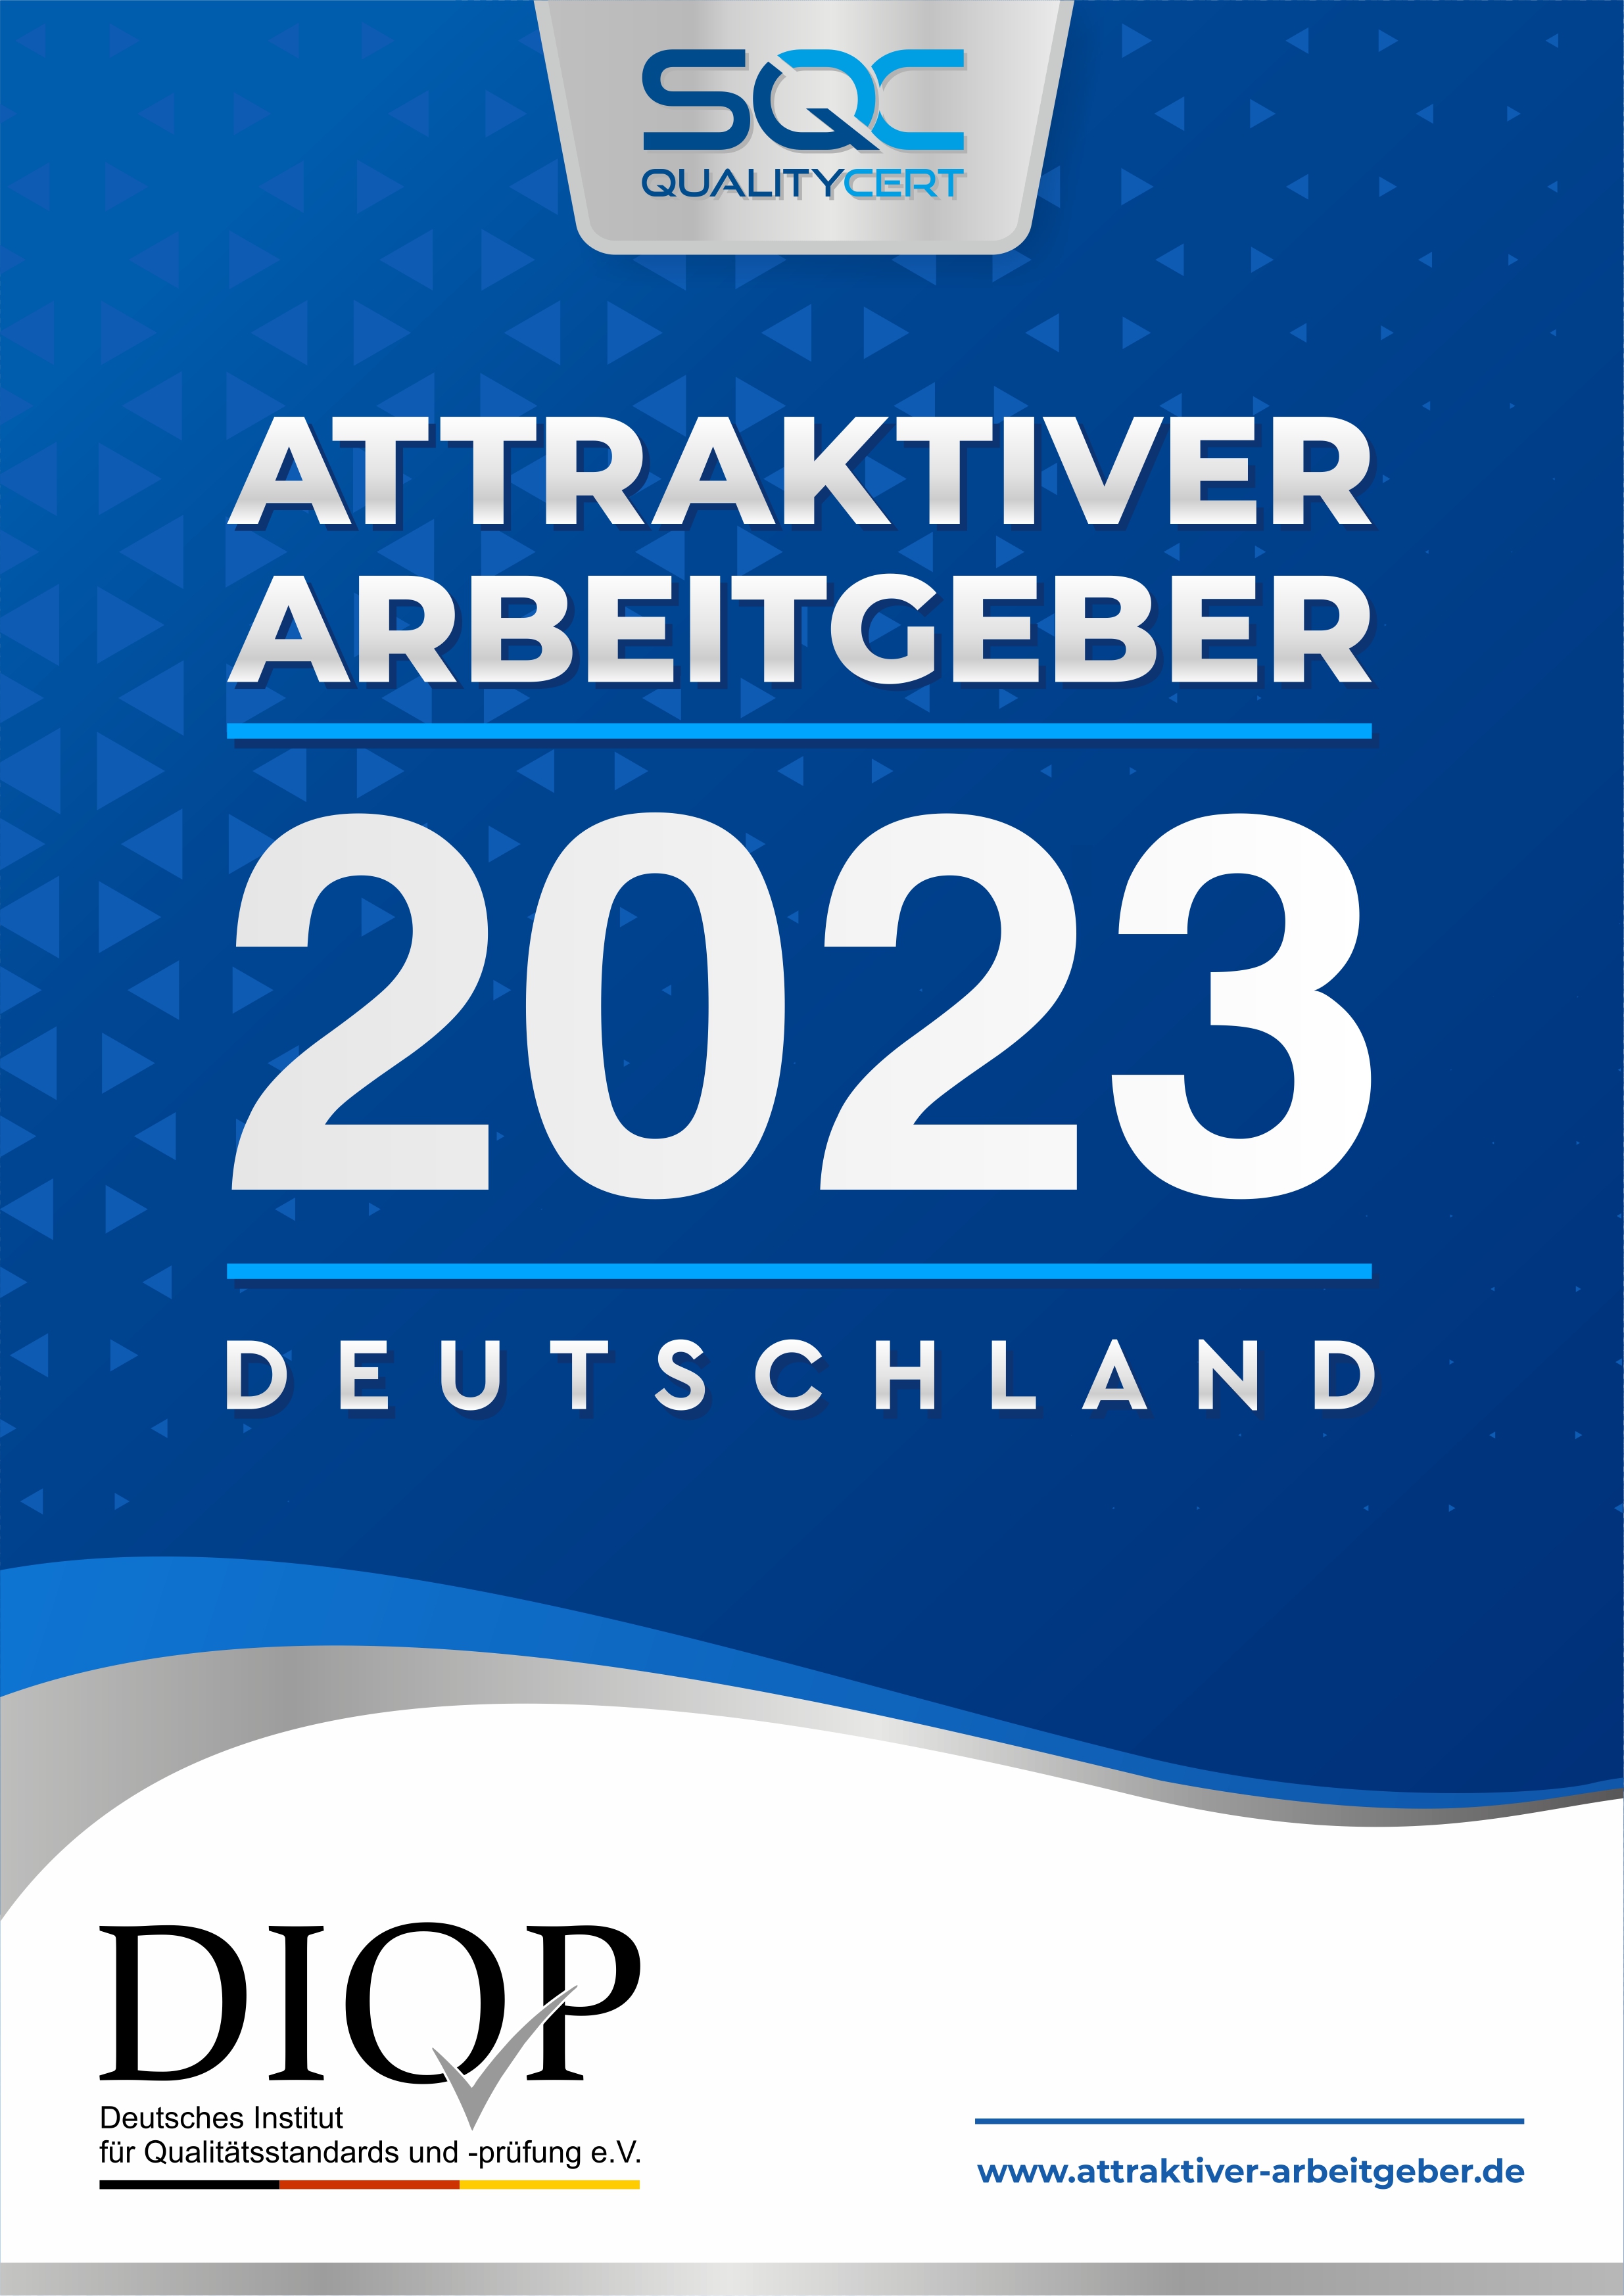 Siegel mit Text: SQC Quality Cert - Attraktiver Arbeitgeber 2023 - DIOP Deutsches Institut für Qualistätsstandards und -prüfung e.V., www.attraktiver-arbeitgeber.de 